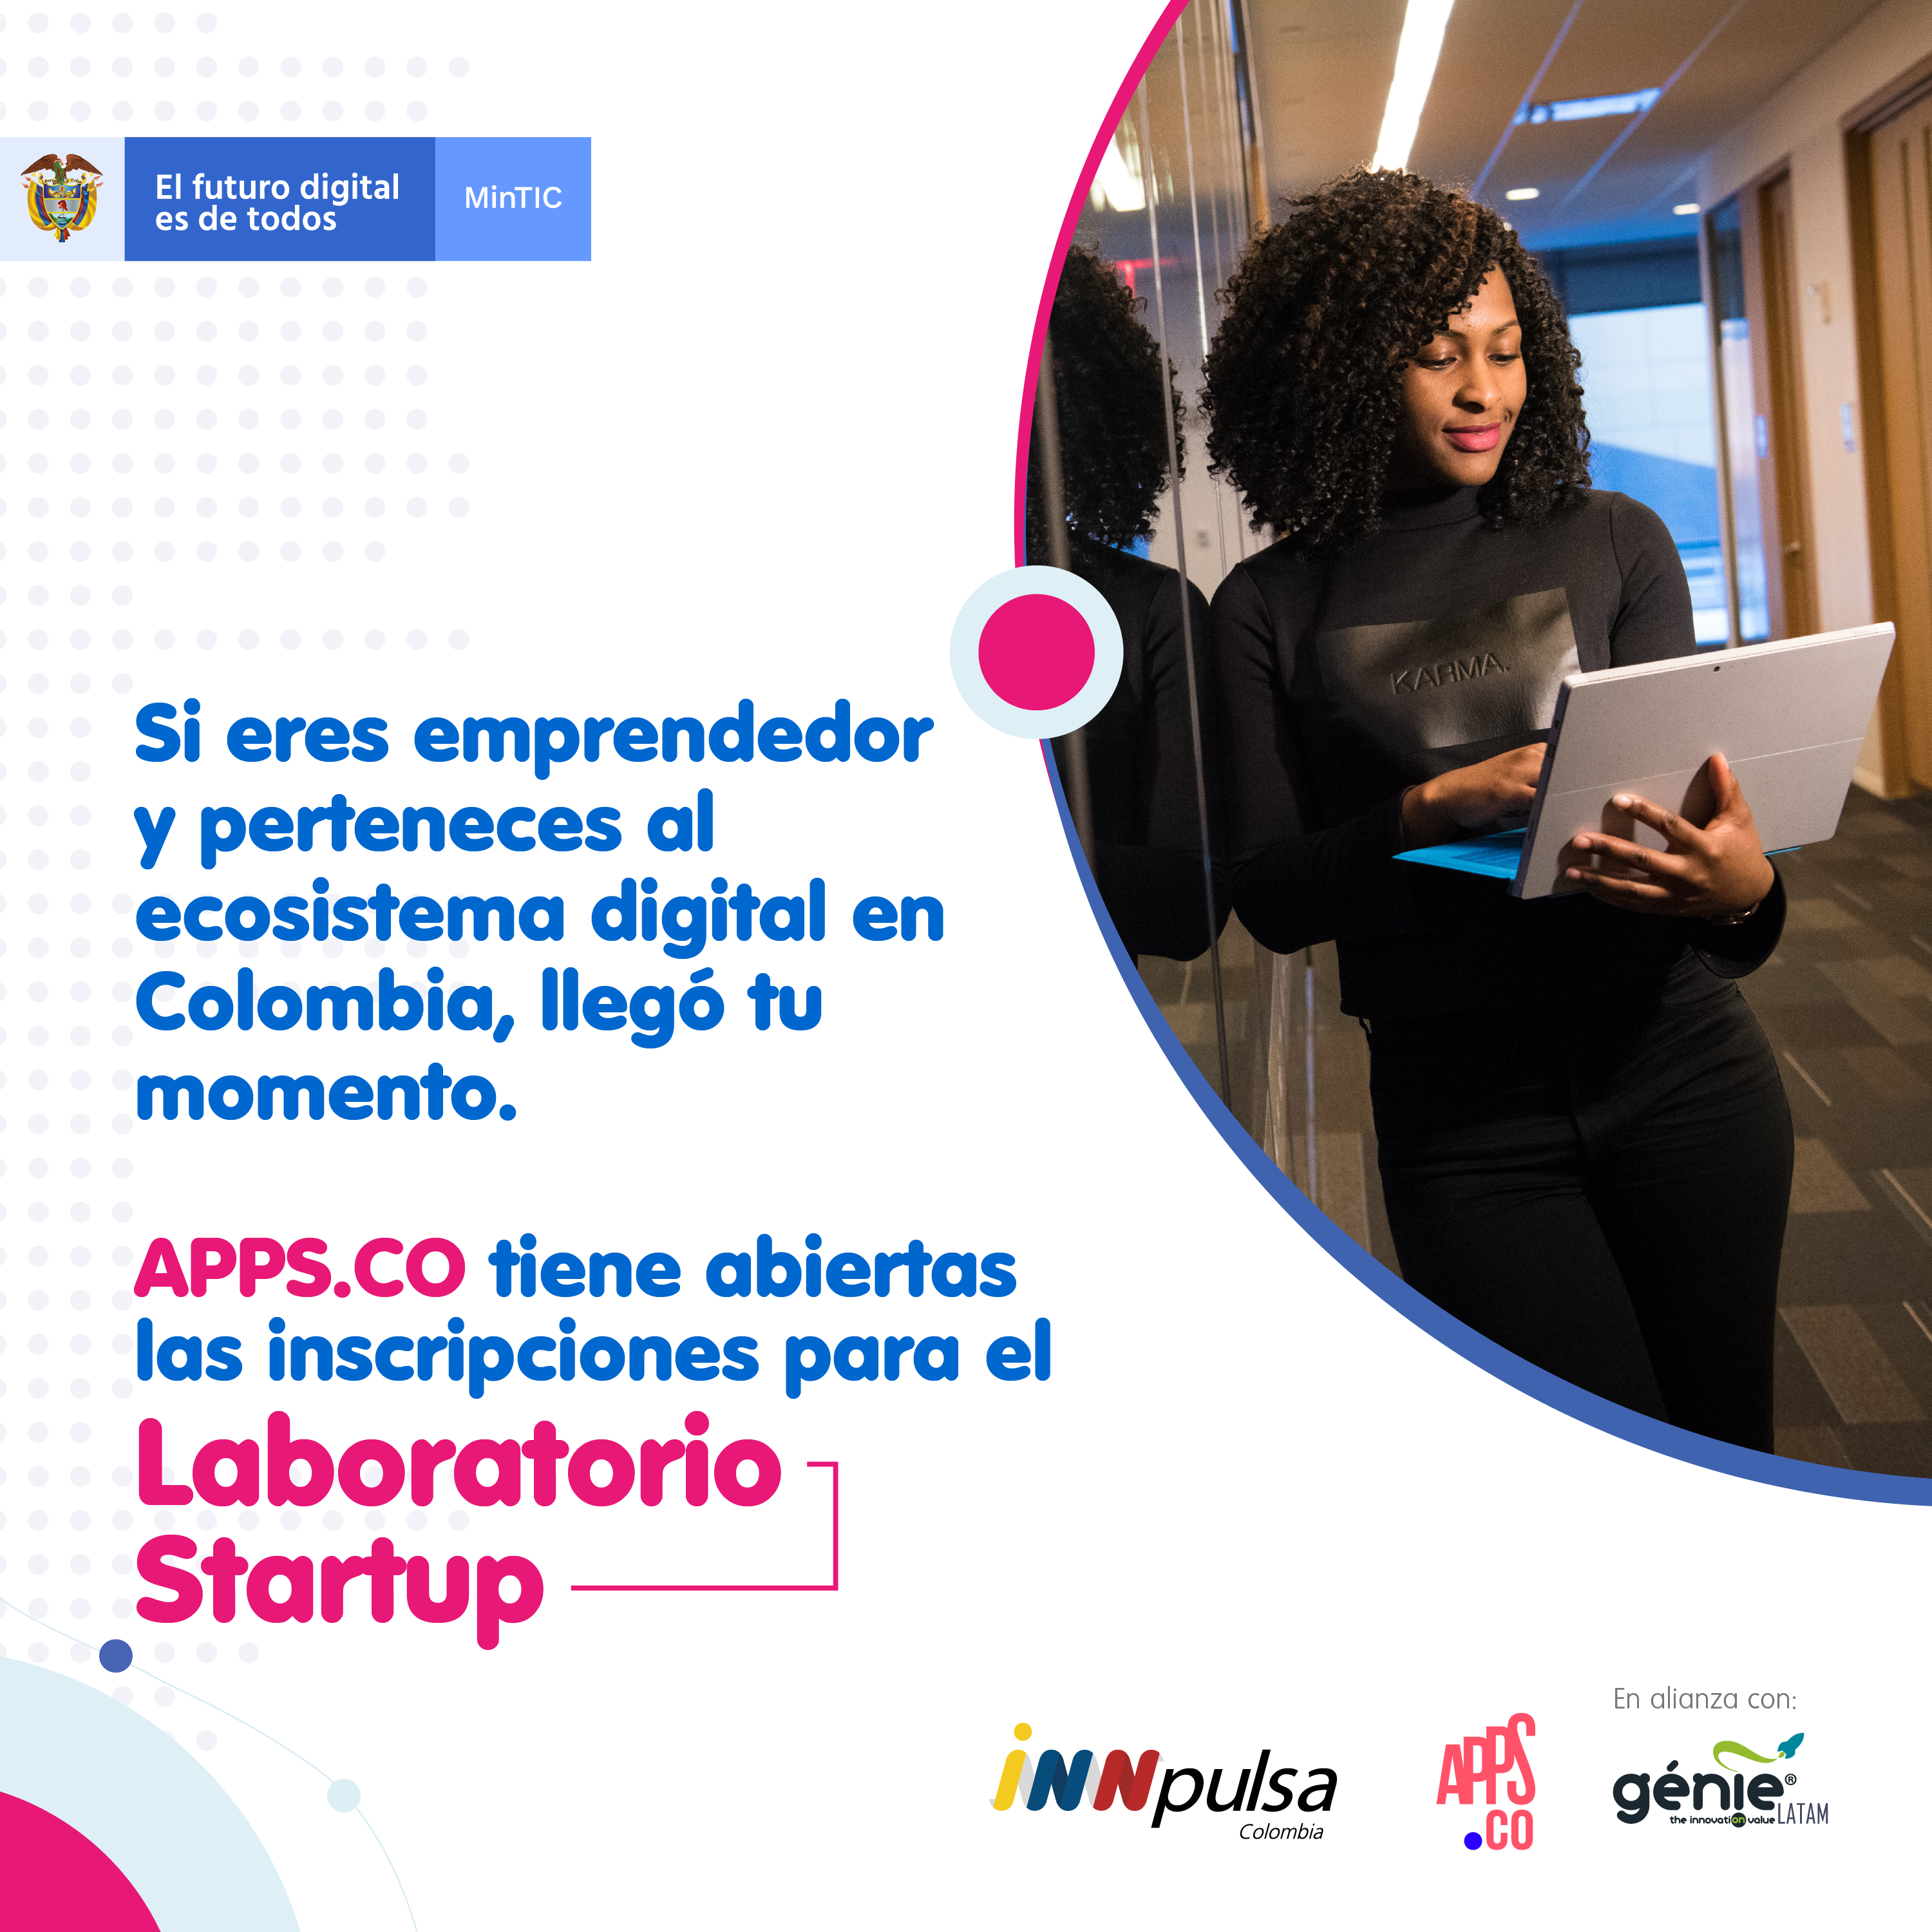 APPS.CO abre inscripciones para Laboratorio Startup dirigida a emprendimientos digitales colombianos